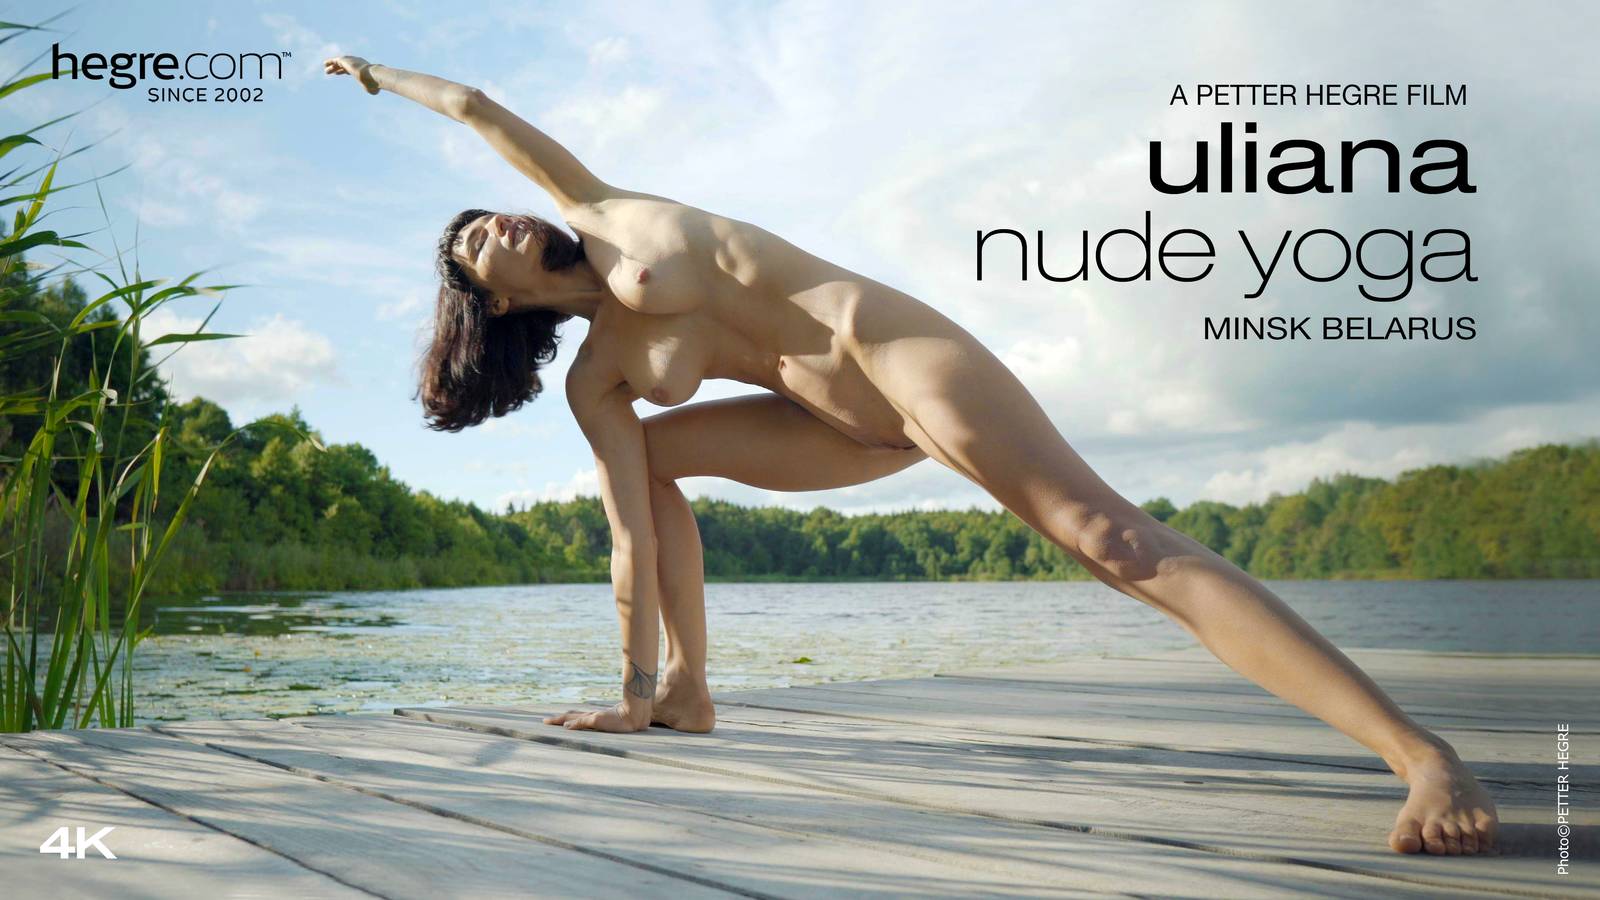 Uliana Nude Yoga - Hegre.com